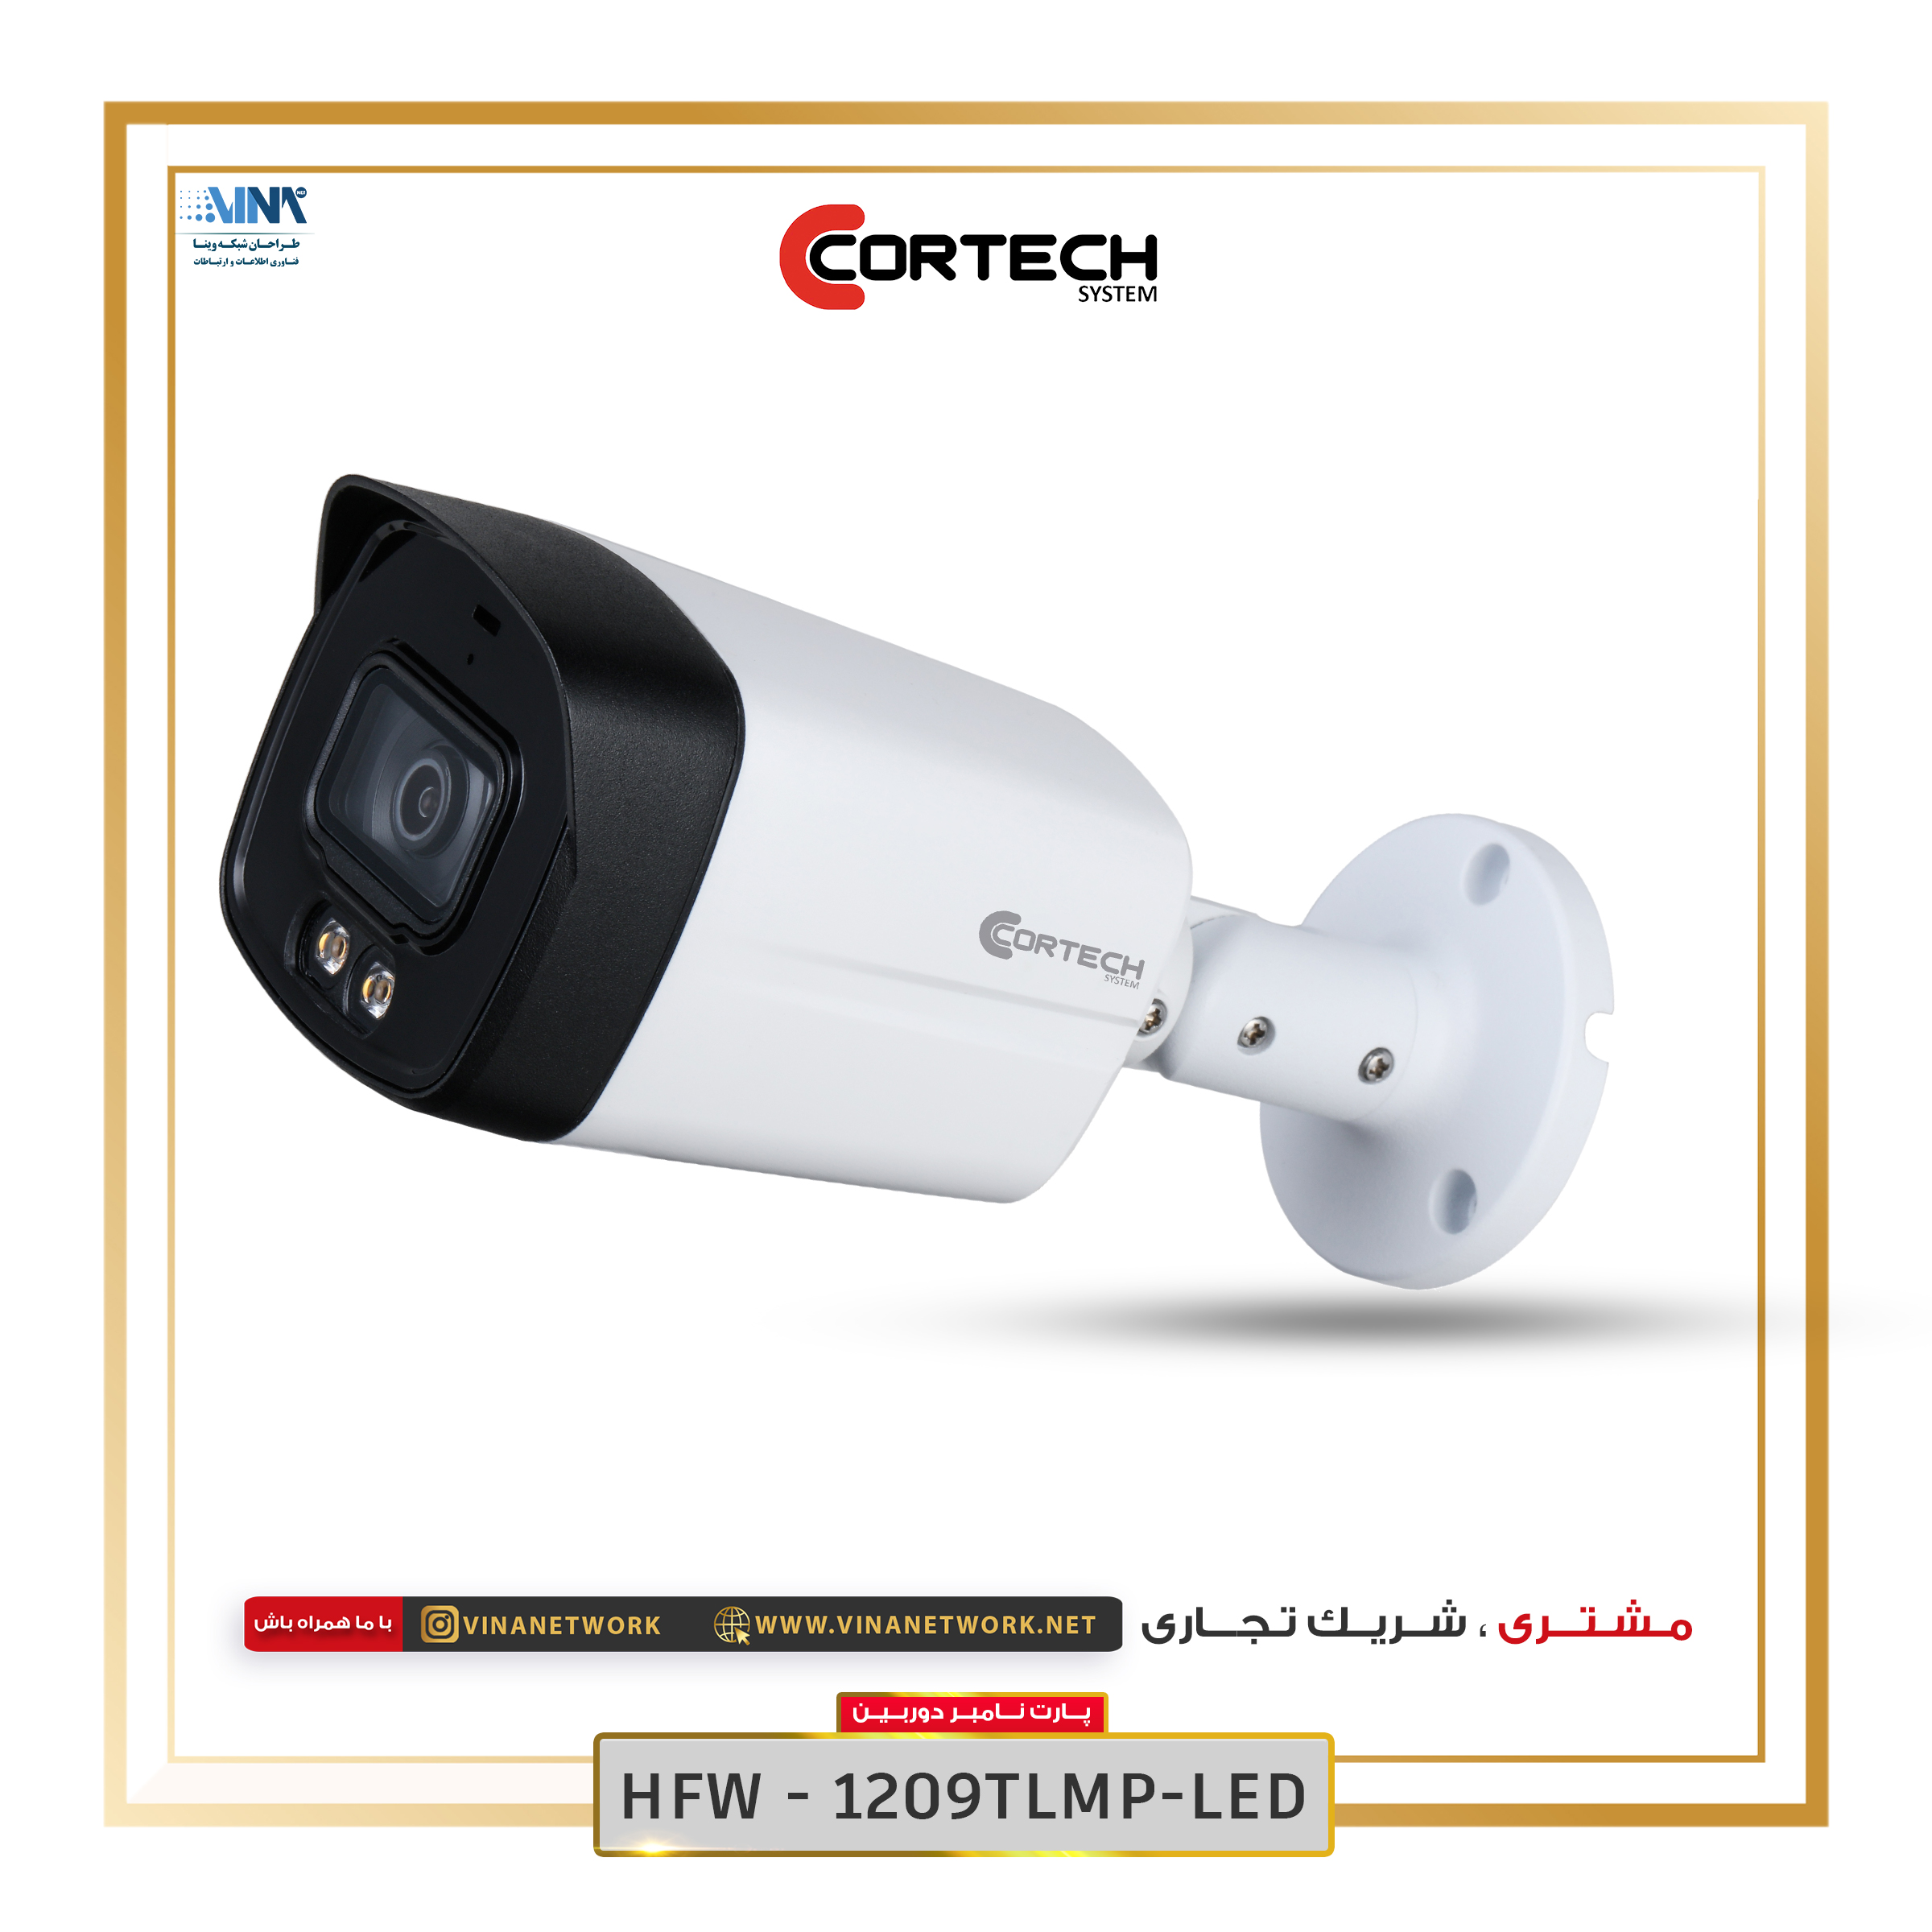 دوربین کورتک مدل HFW1209TLMP-LED